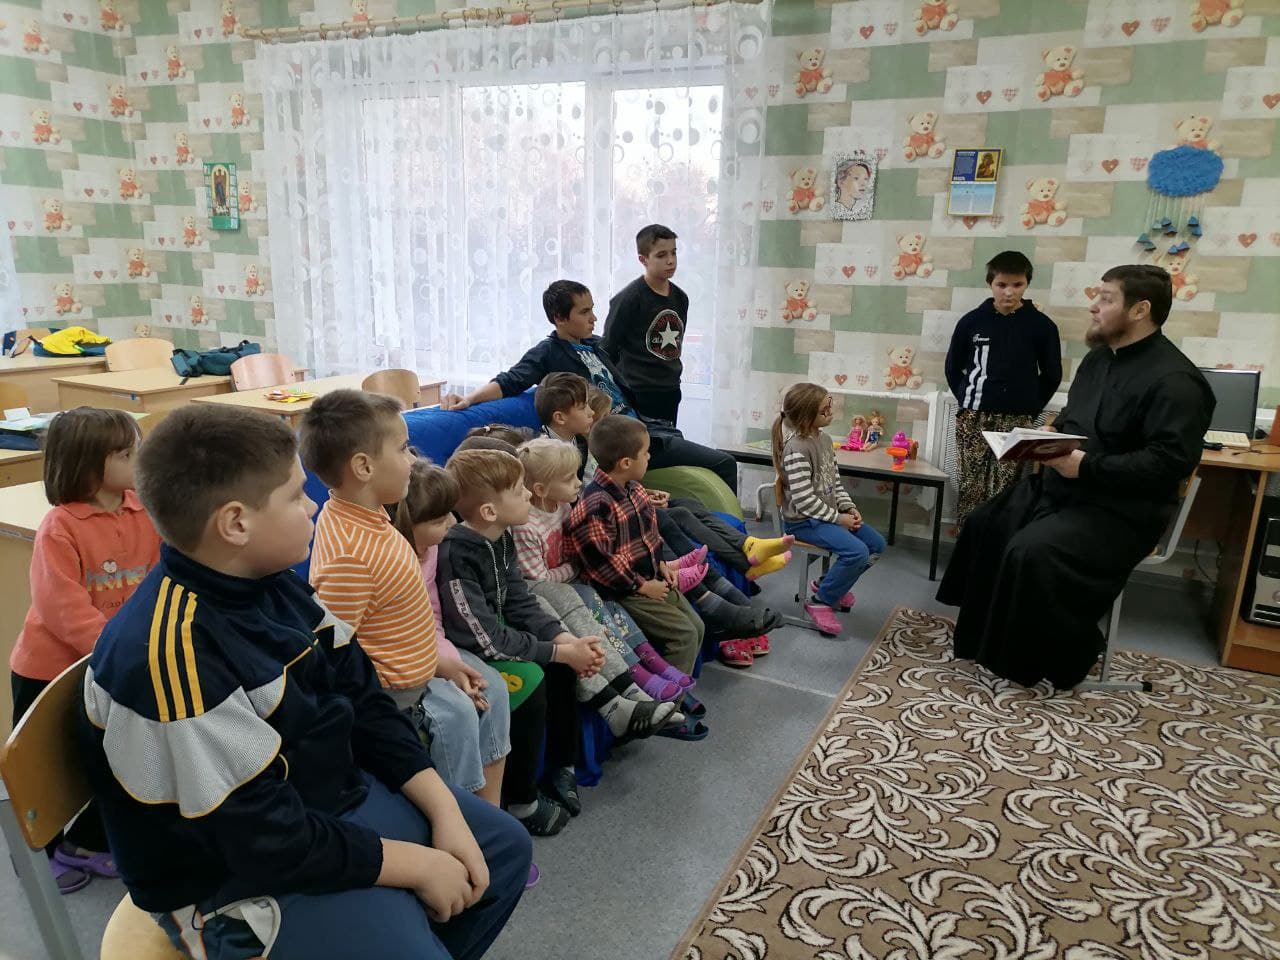 Дружеские встречи священника Бобруйской епархии с детьми из Михалевского приюта